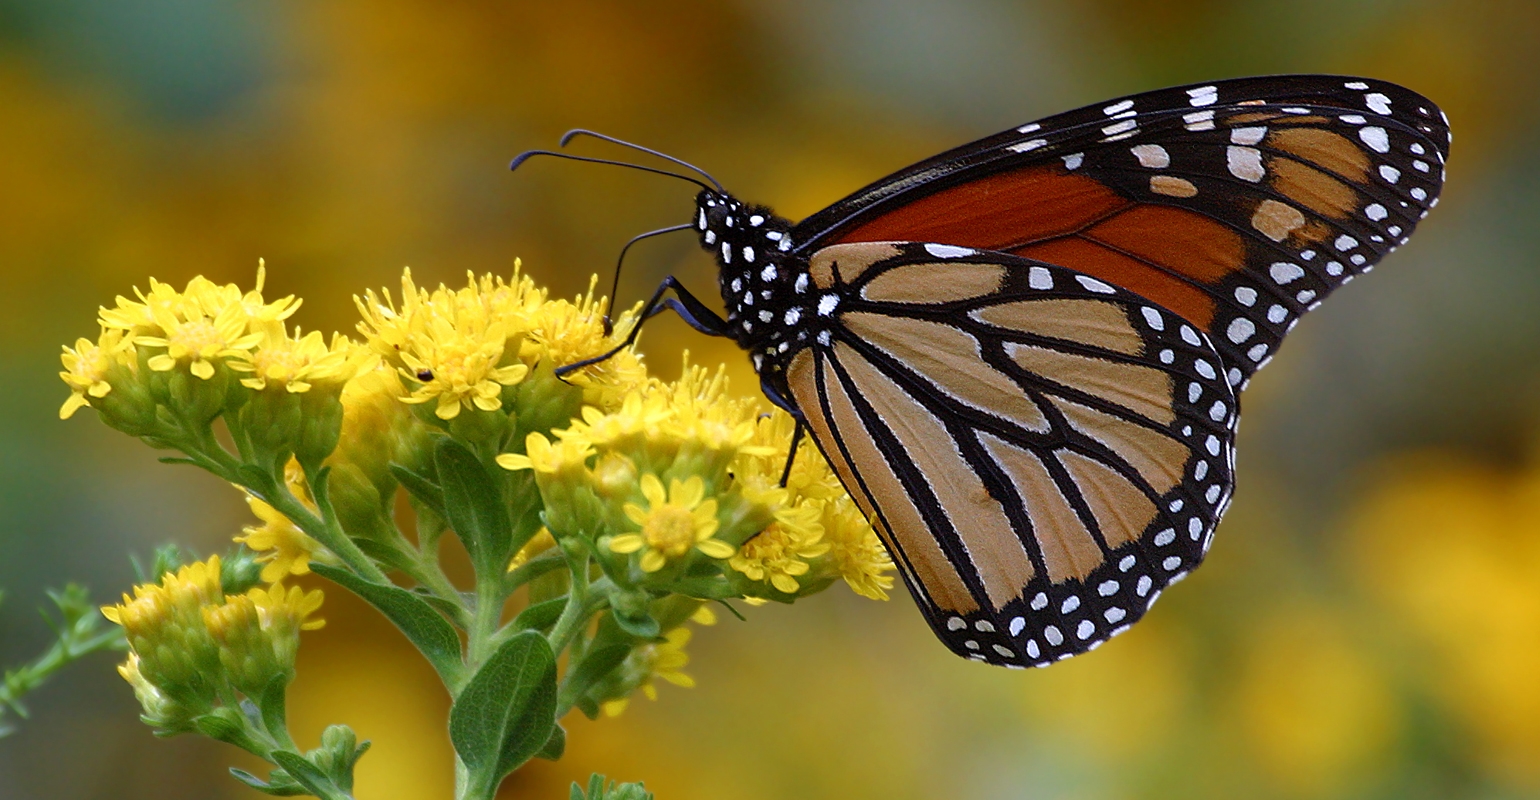 Great Plains Rangelands Are Important Habitat for Pollinators